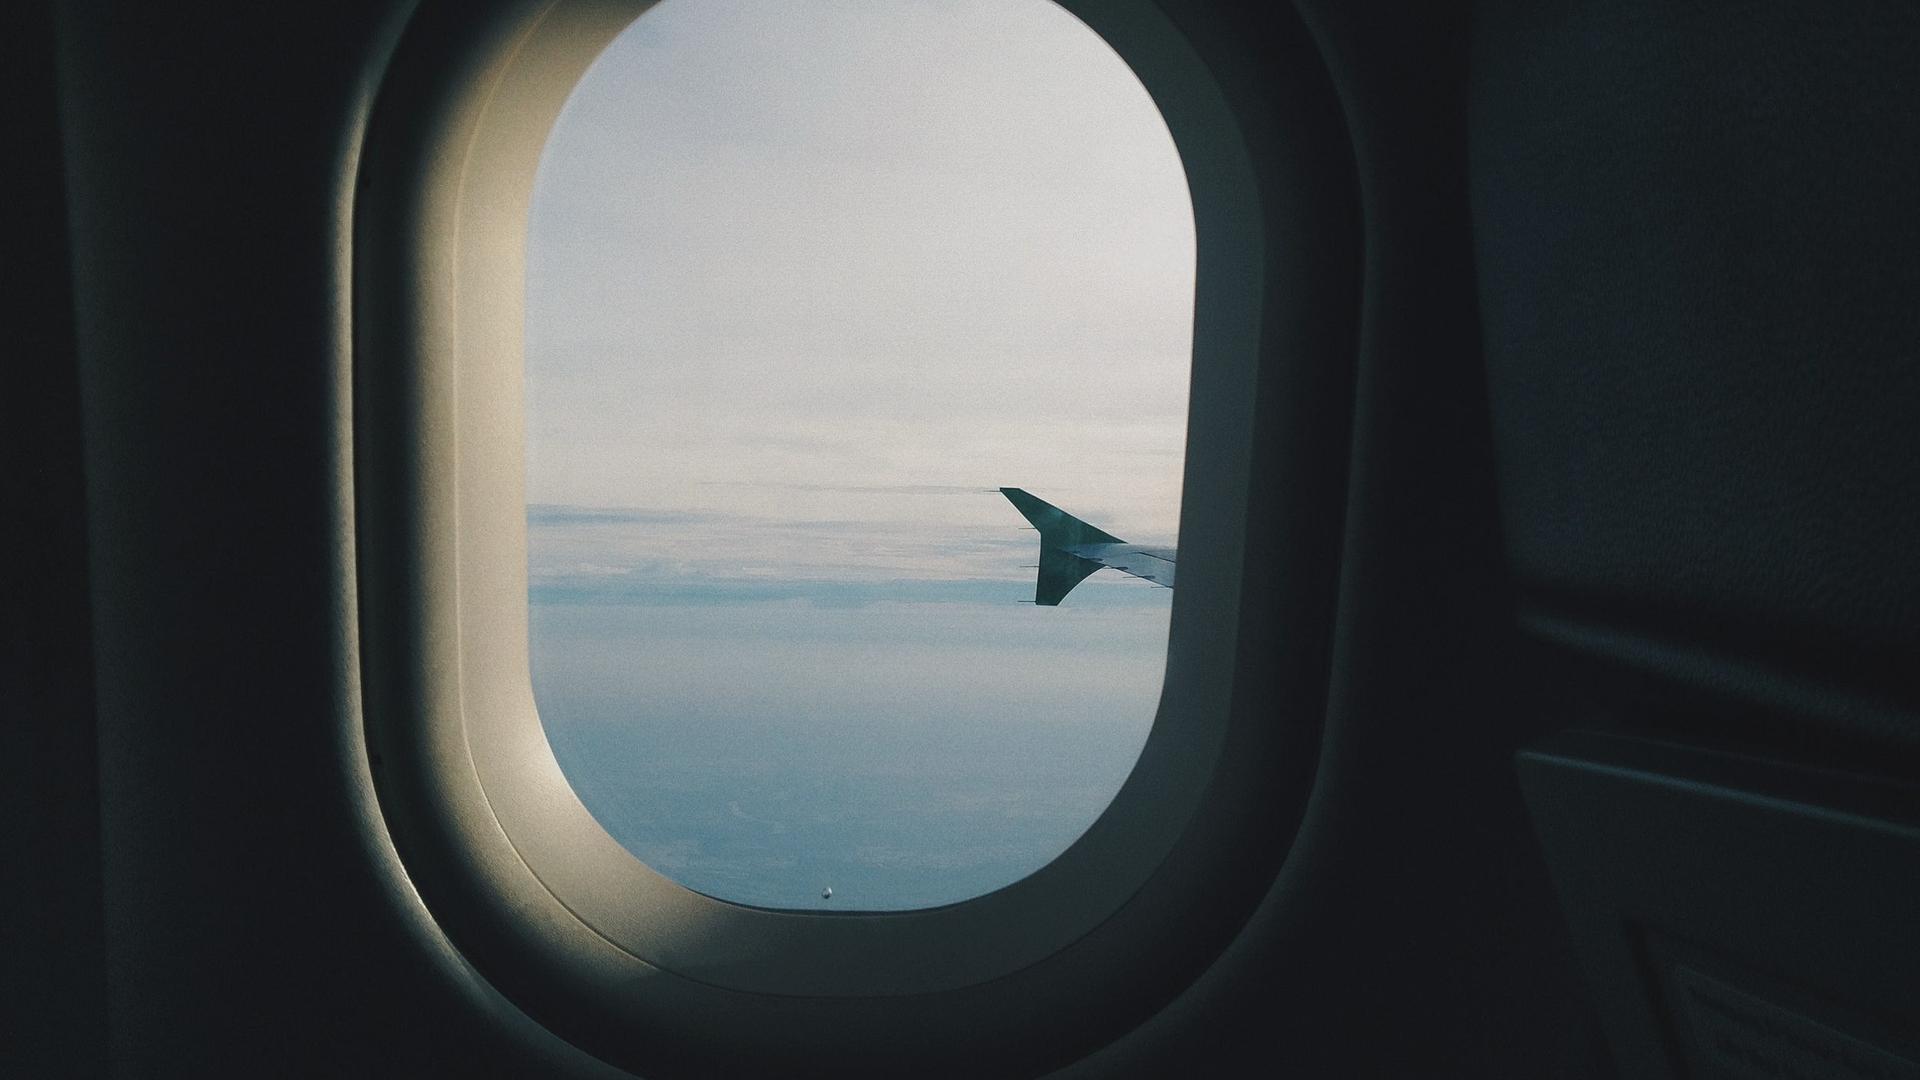 Reisen als Umweltproblem: Blick aus dem Flugzeugfenster